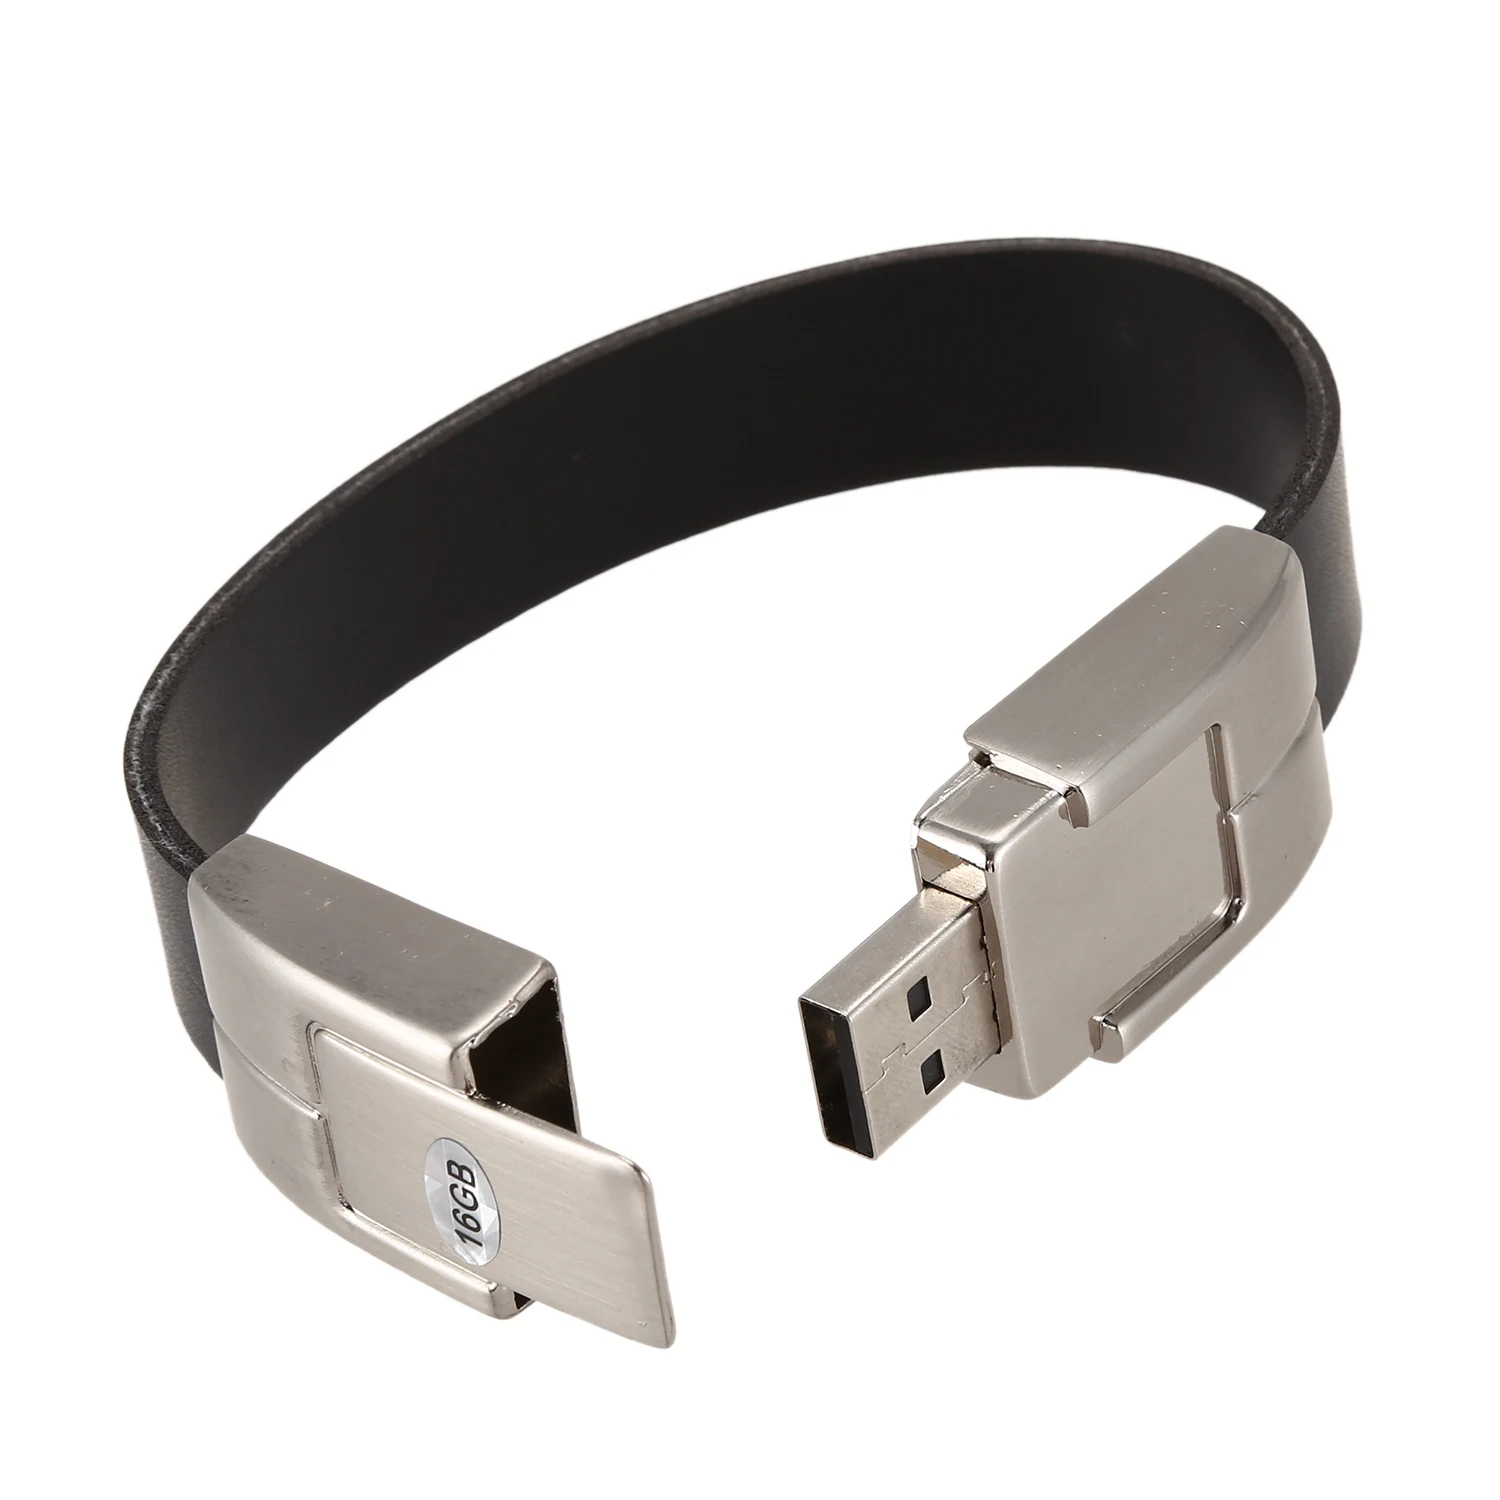 USB 2,0 кожаный браслет карта памяти флэш-накопитель U диск подарок, черный 16GB - Цвет: Black